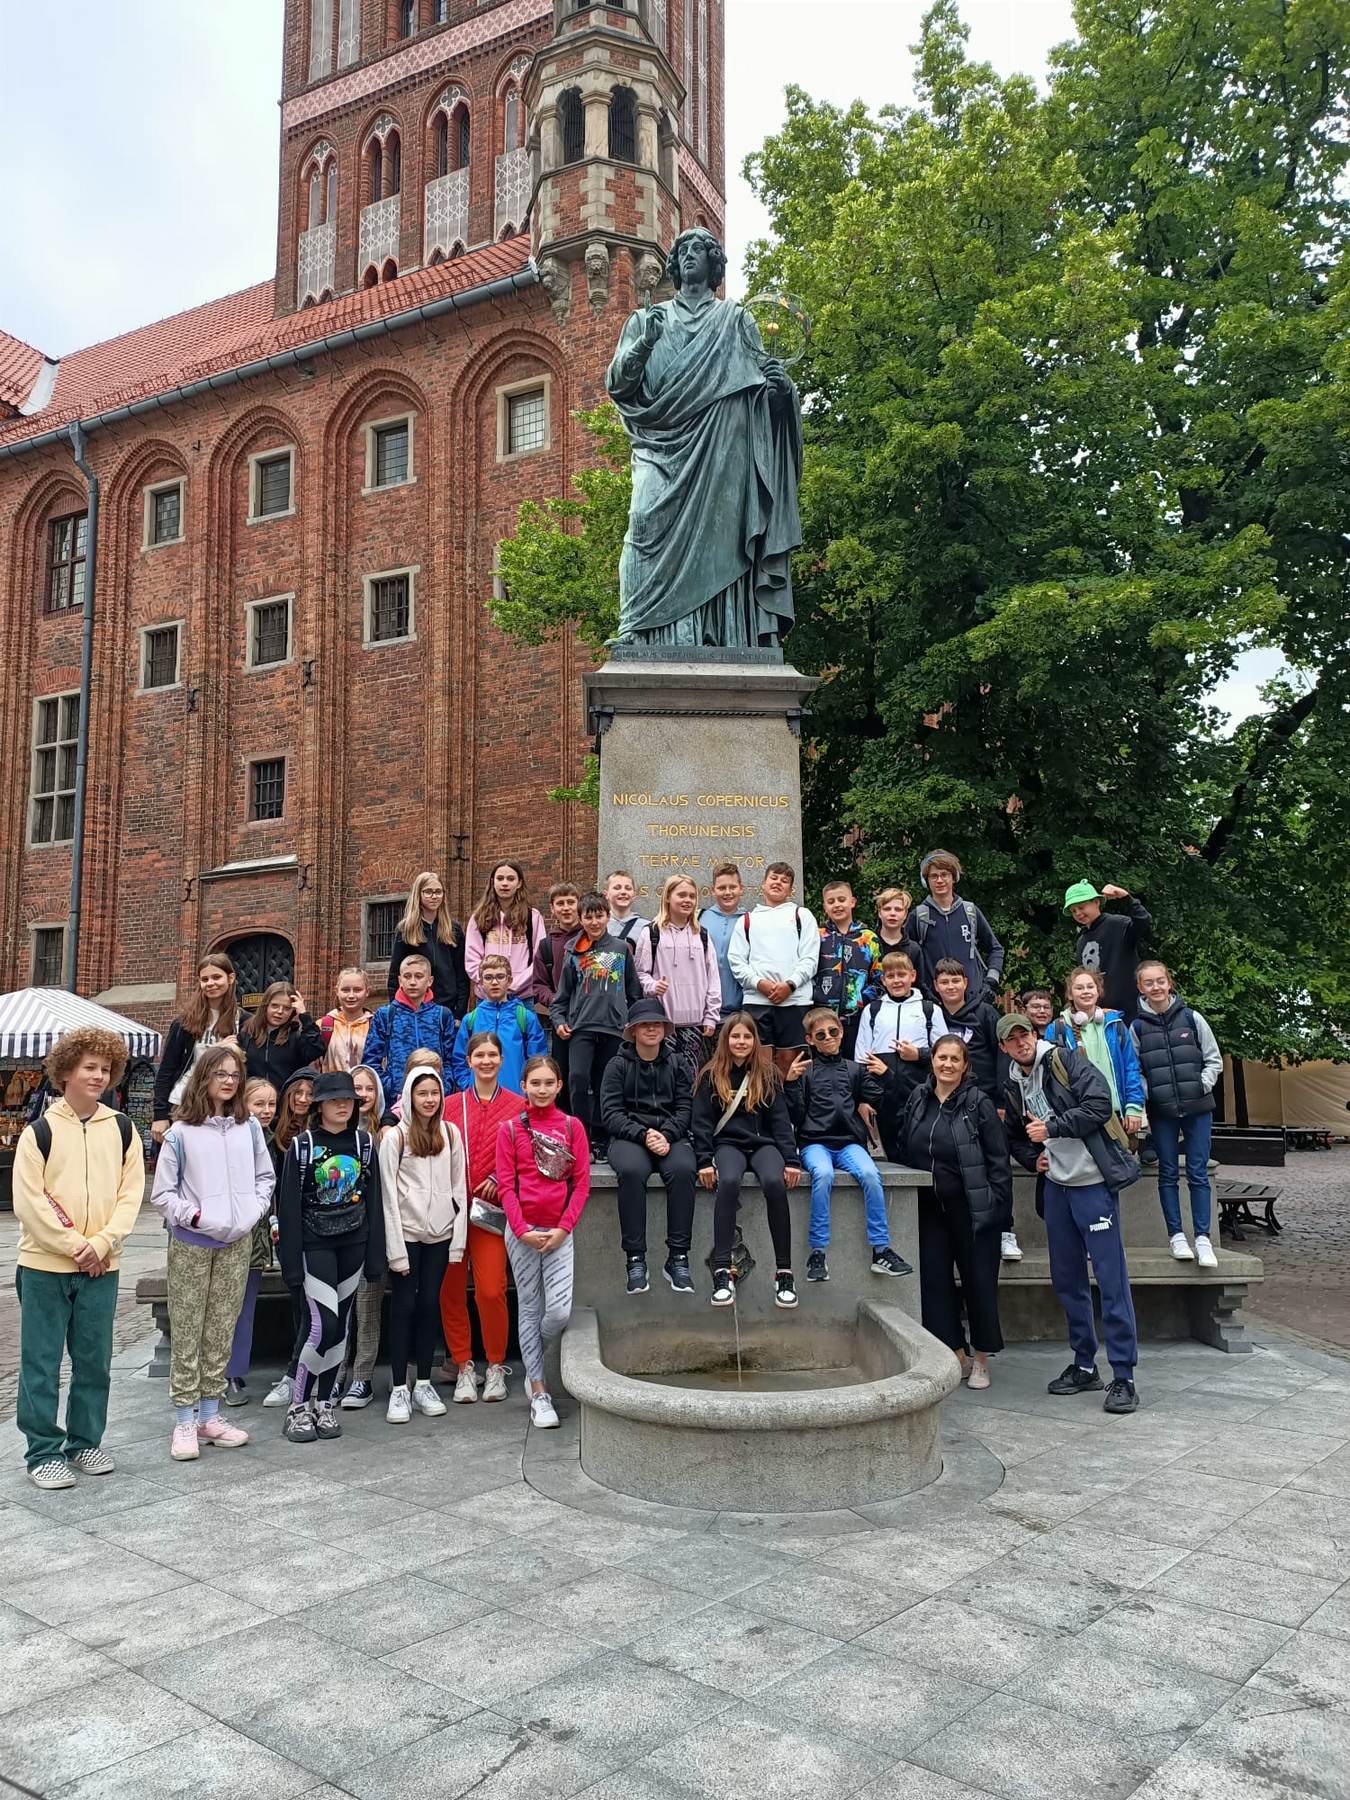 Grupa dzieci stoi przy pomniku Kopernika